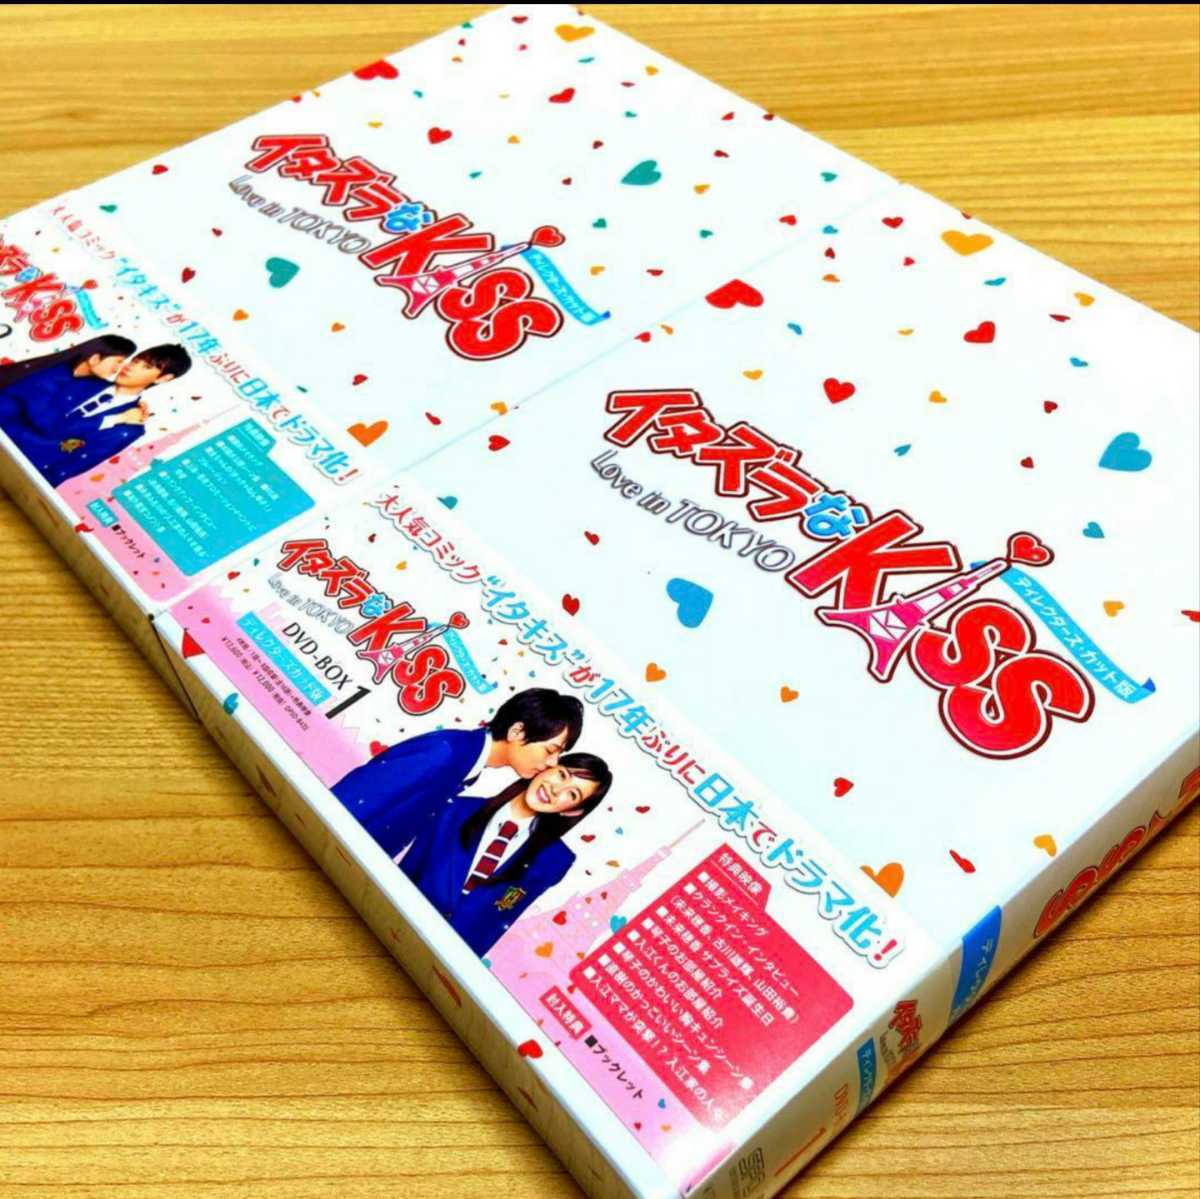 並行輸入品] イタズラなkiss2 love in tokyo DVD 全巻セット ...